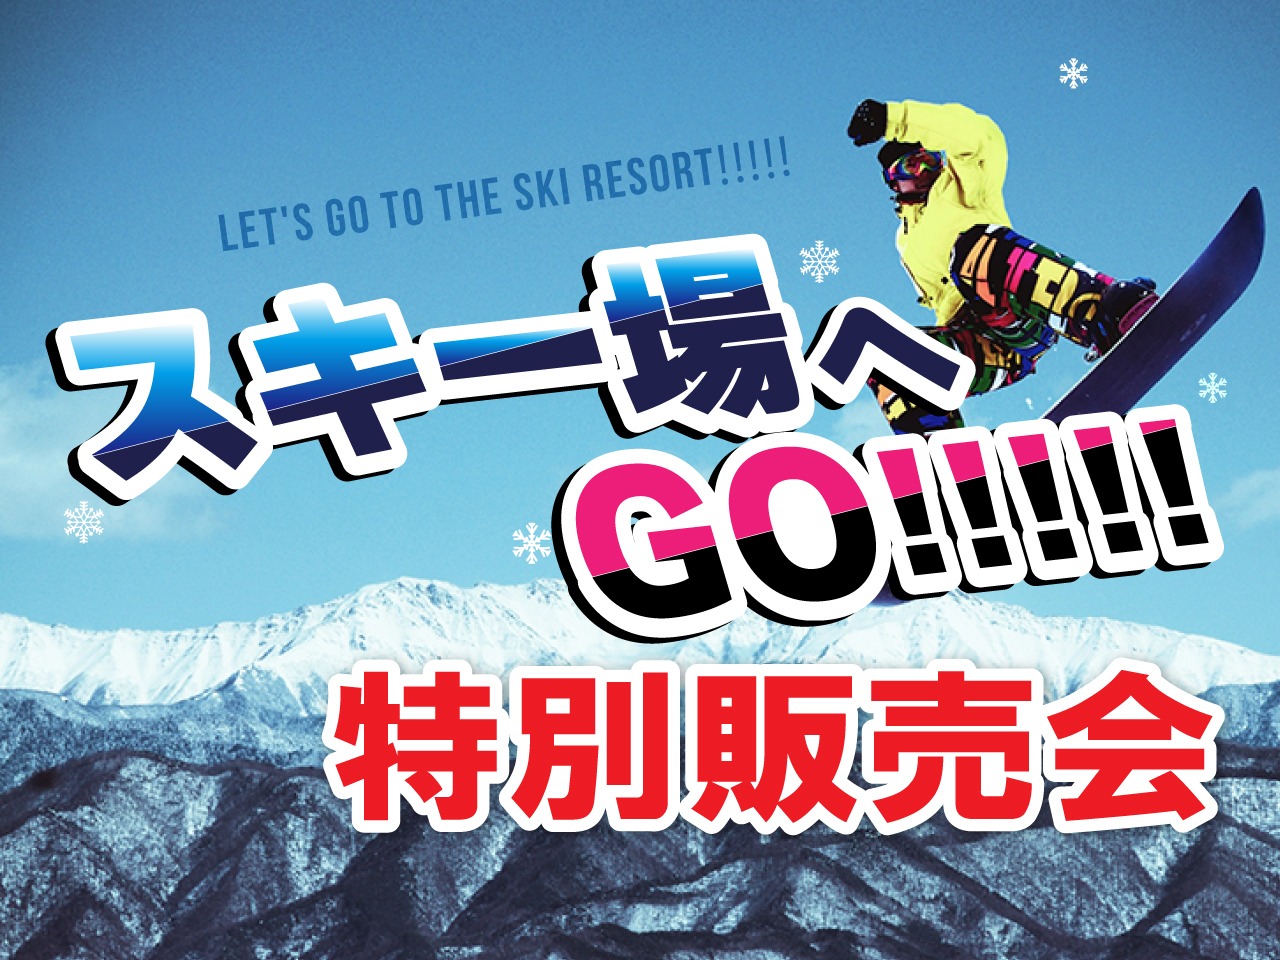 スキー場へGO!!!!!特別販売会 公式サイト